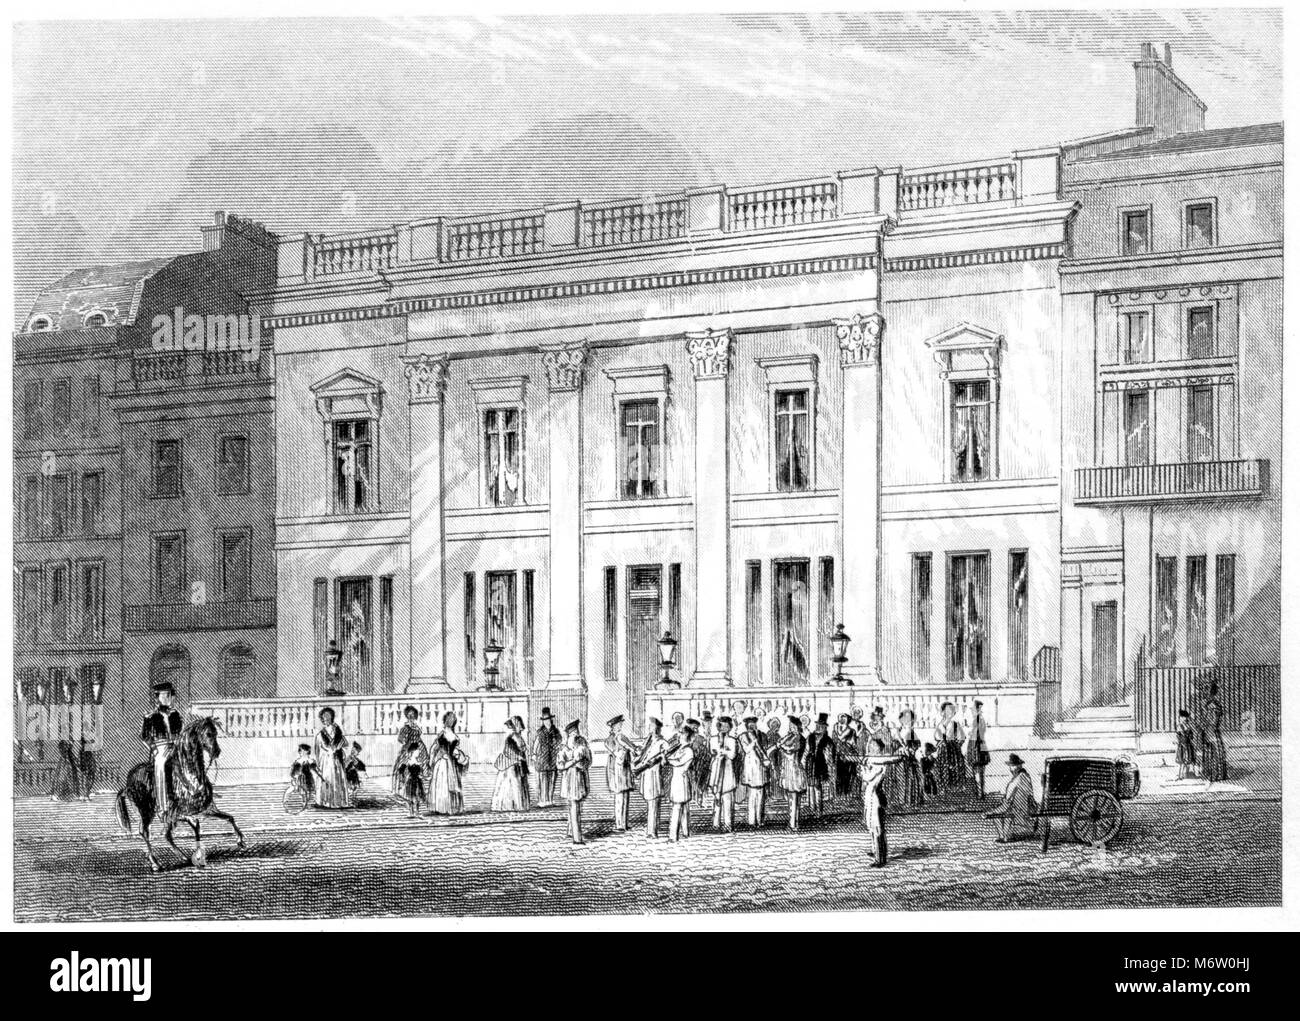 Une gravure de Crockfords Club House, Londres numérisées à haute résolution à partir d'un livre imprimé en 1851. Croyait libres de droit. Banque D'Images